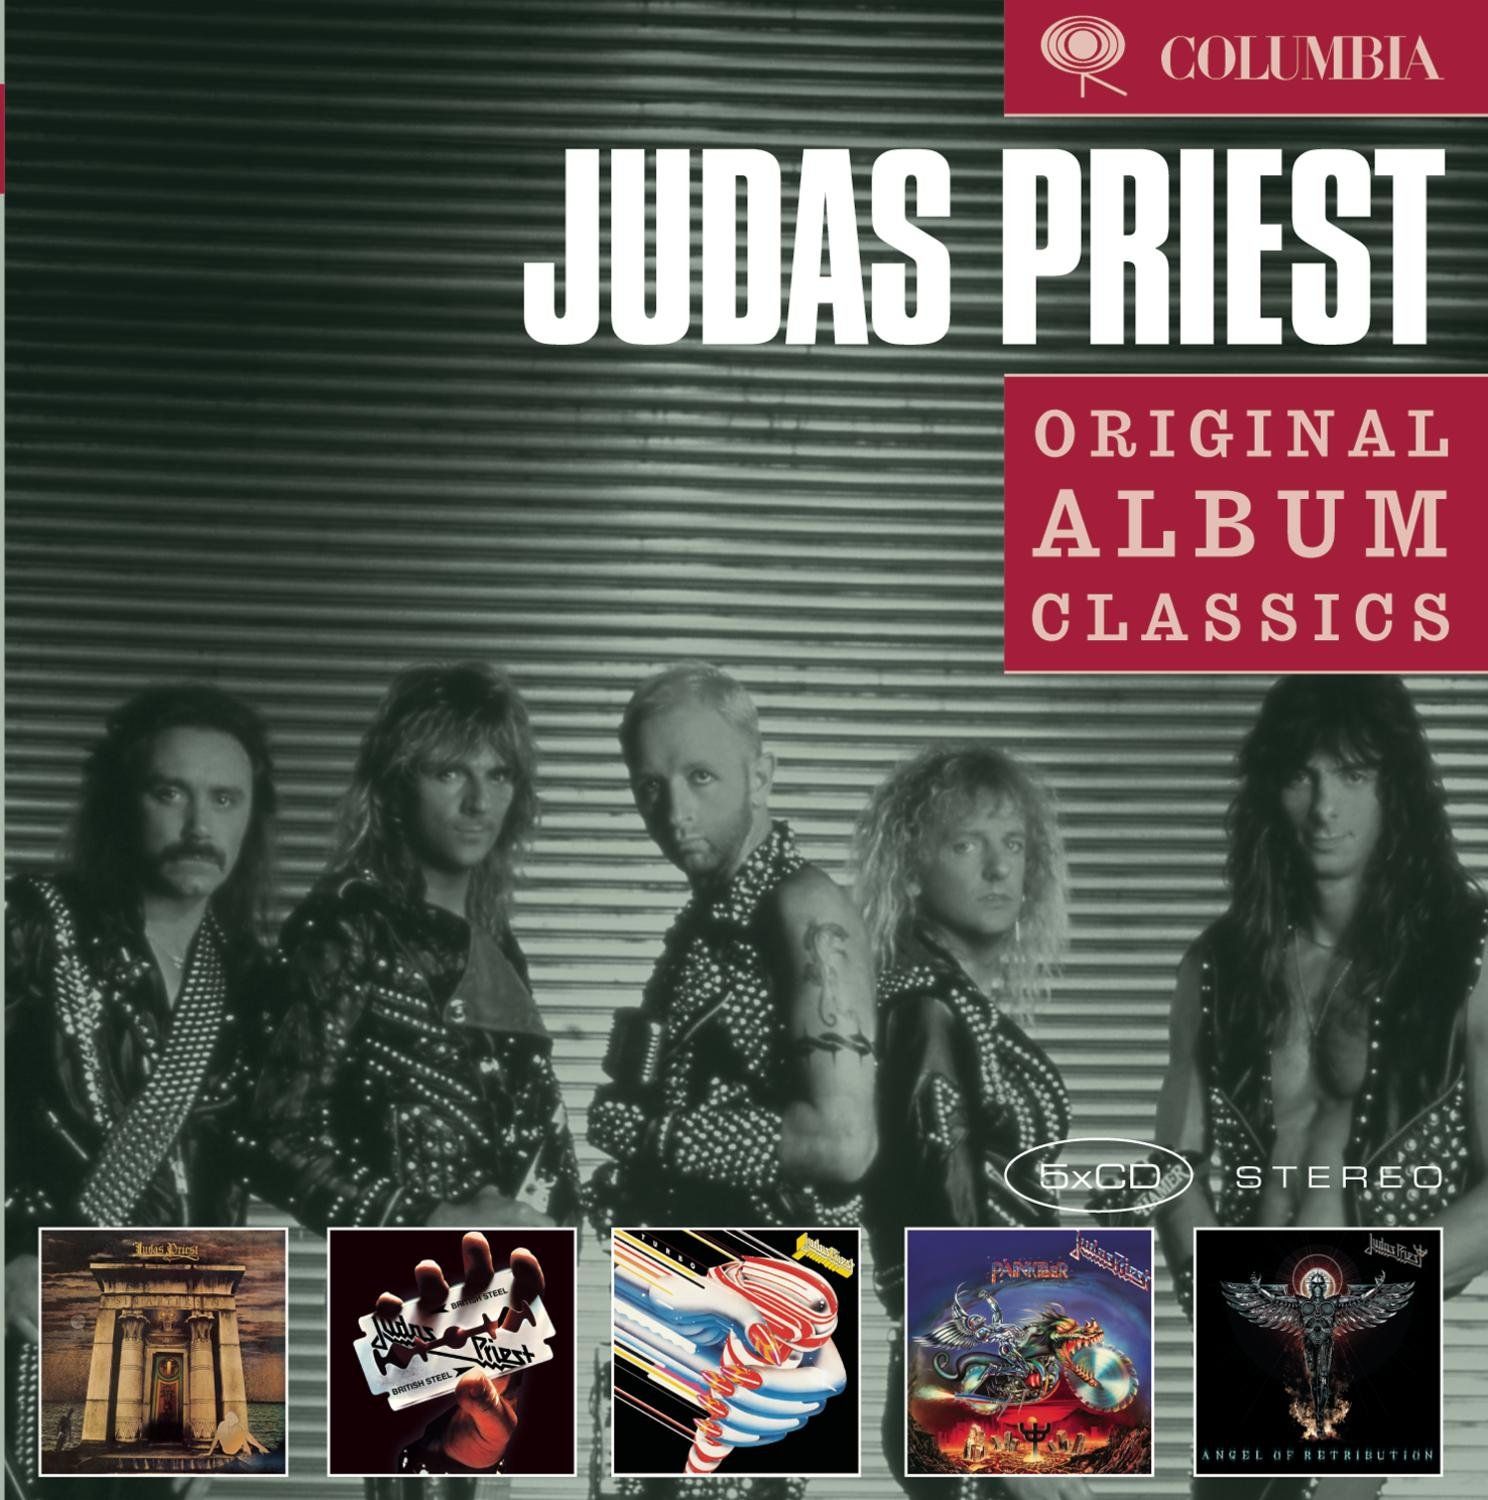 Judas priest diamonds and rust фото 75